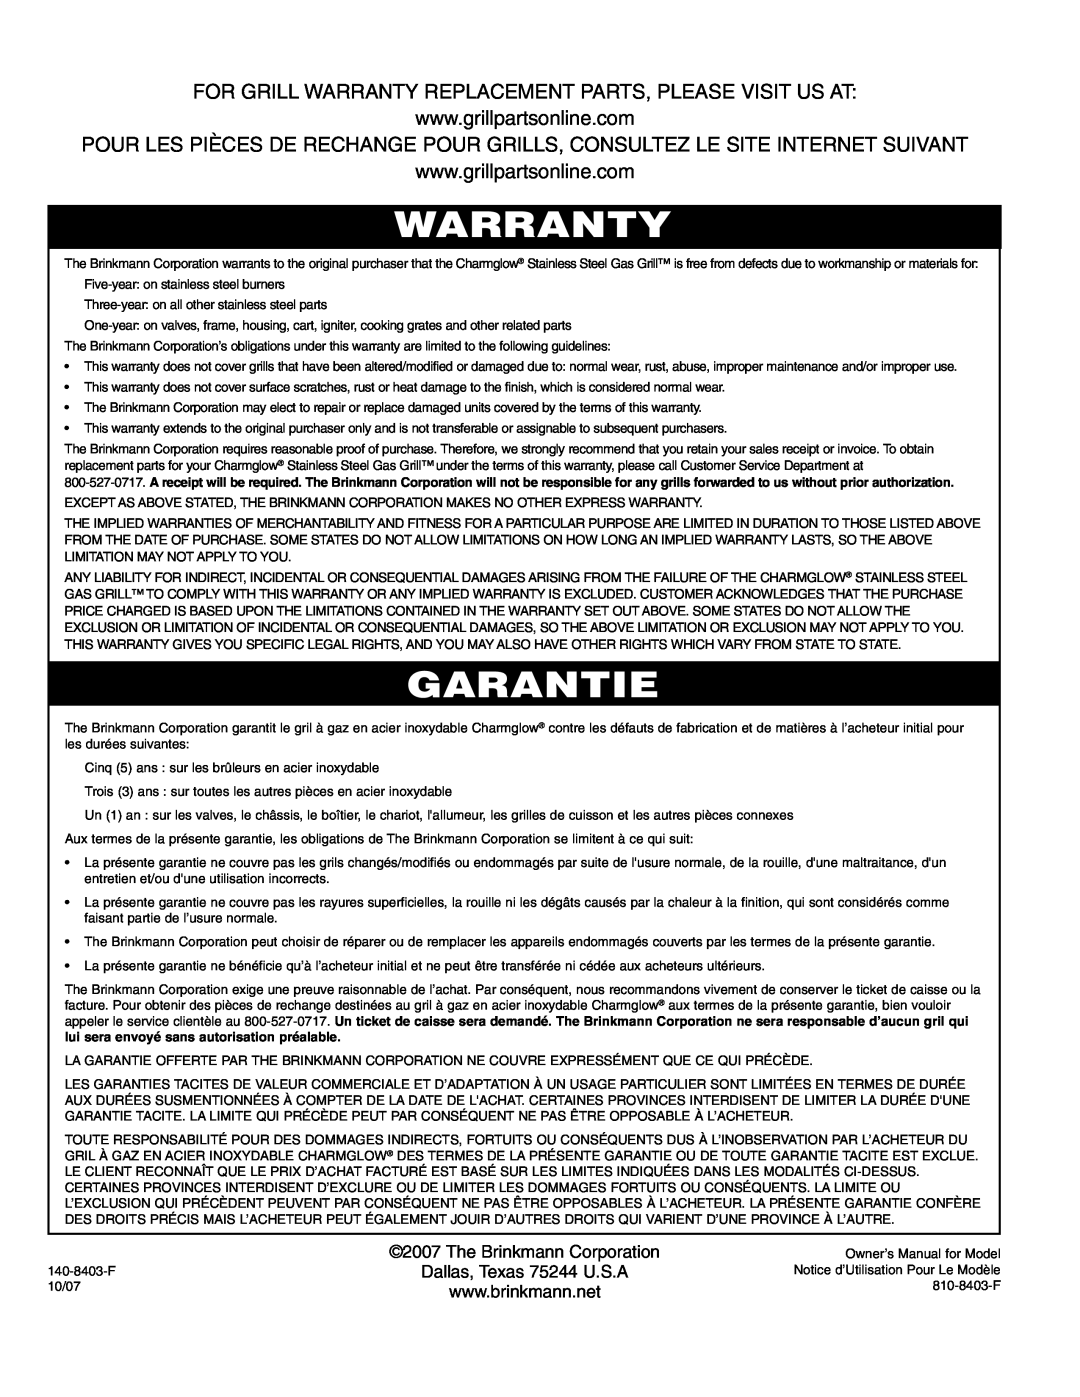 Brinkmann 4 Burner Gas Grill Grill owner manual Warranty, Garantie, The Brinkmann Corporation Dallas, Texas 75244 U.S.A 